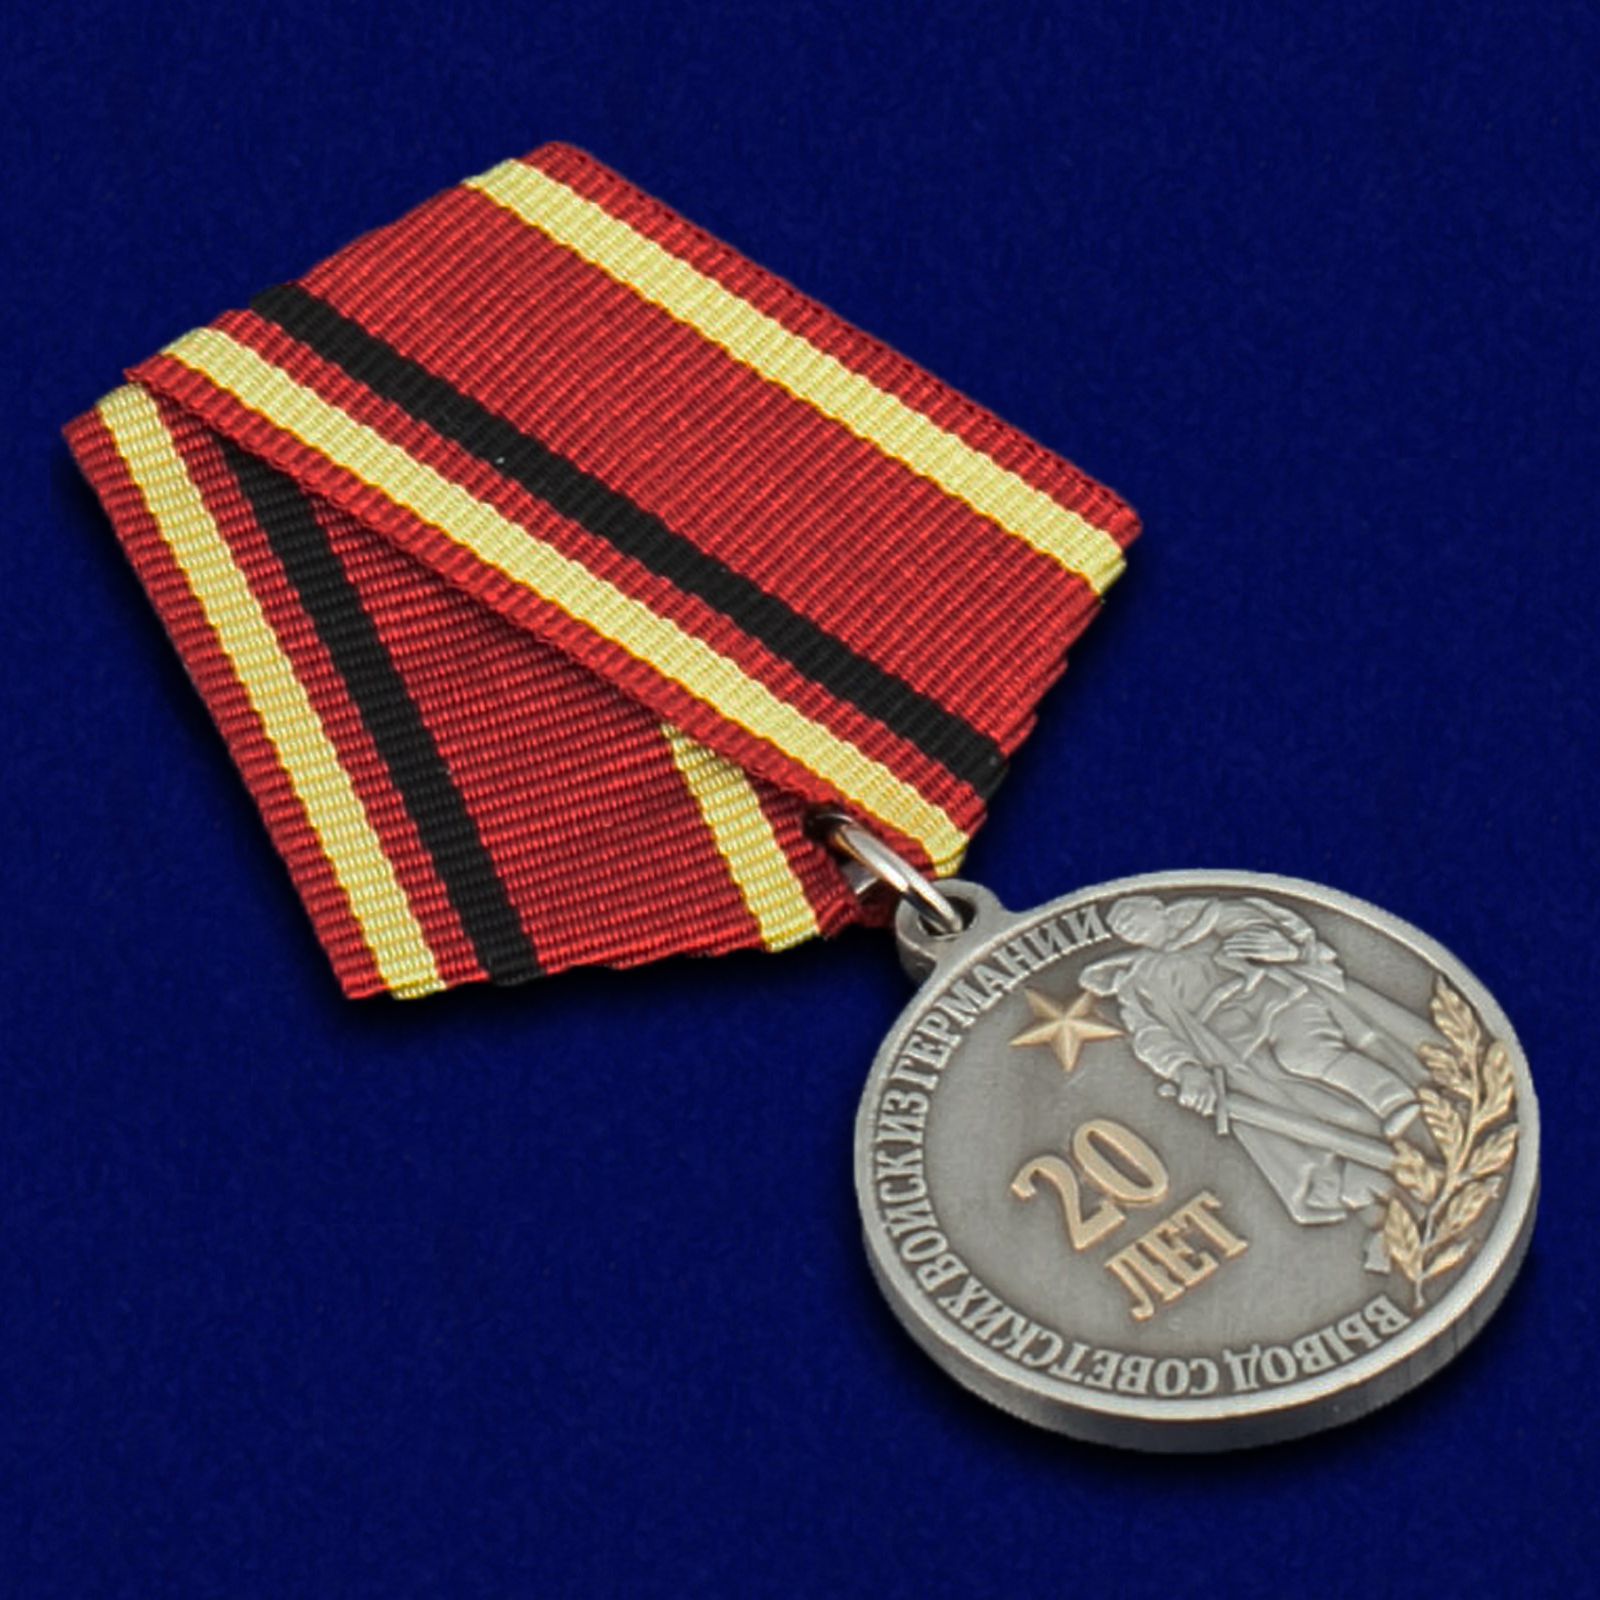 Медаль "20 лет Вывода войск из Германии" 